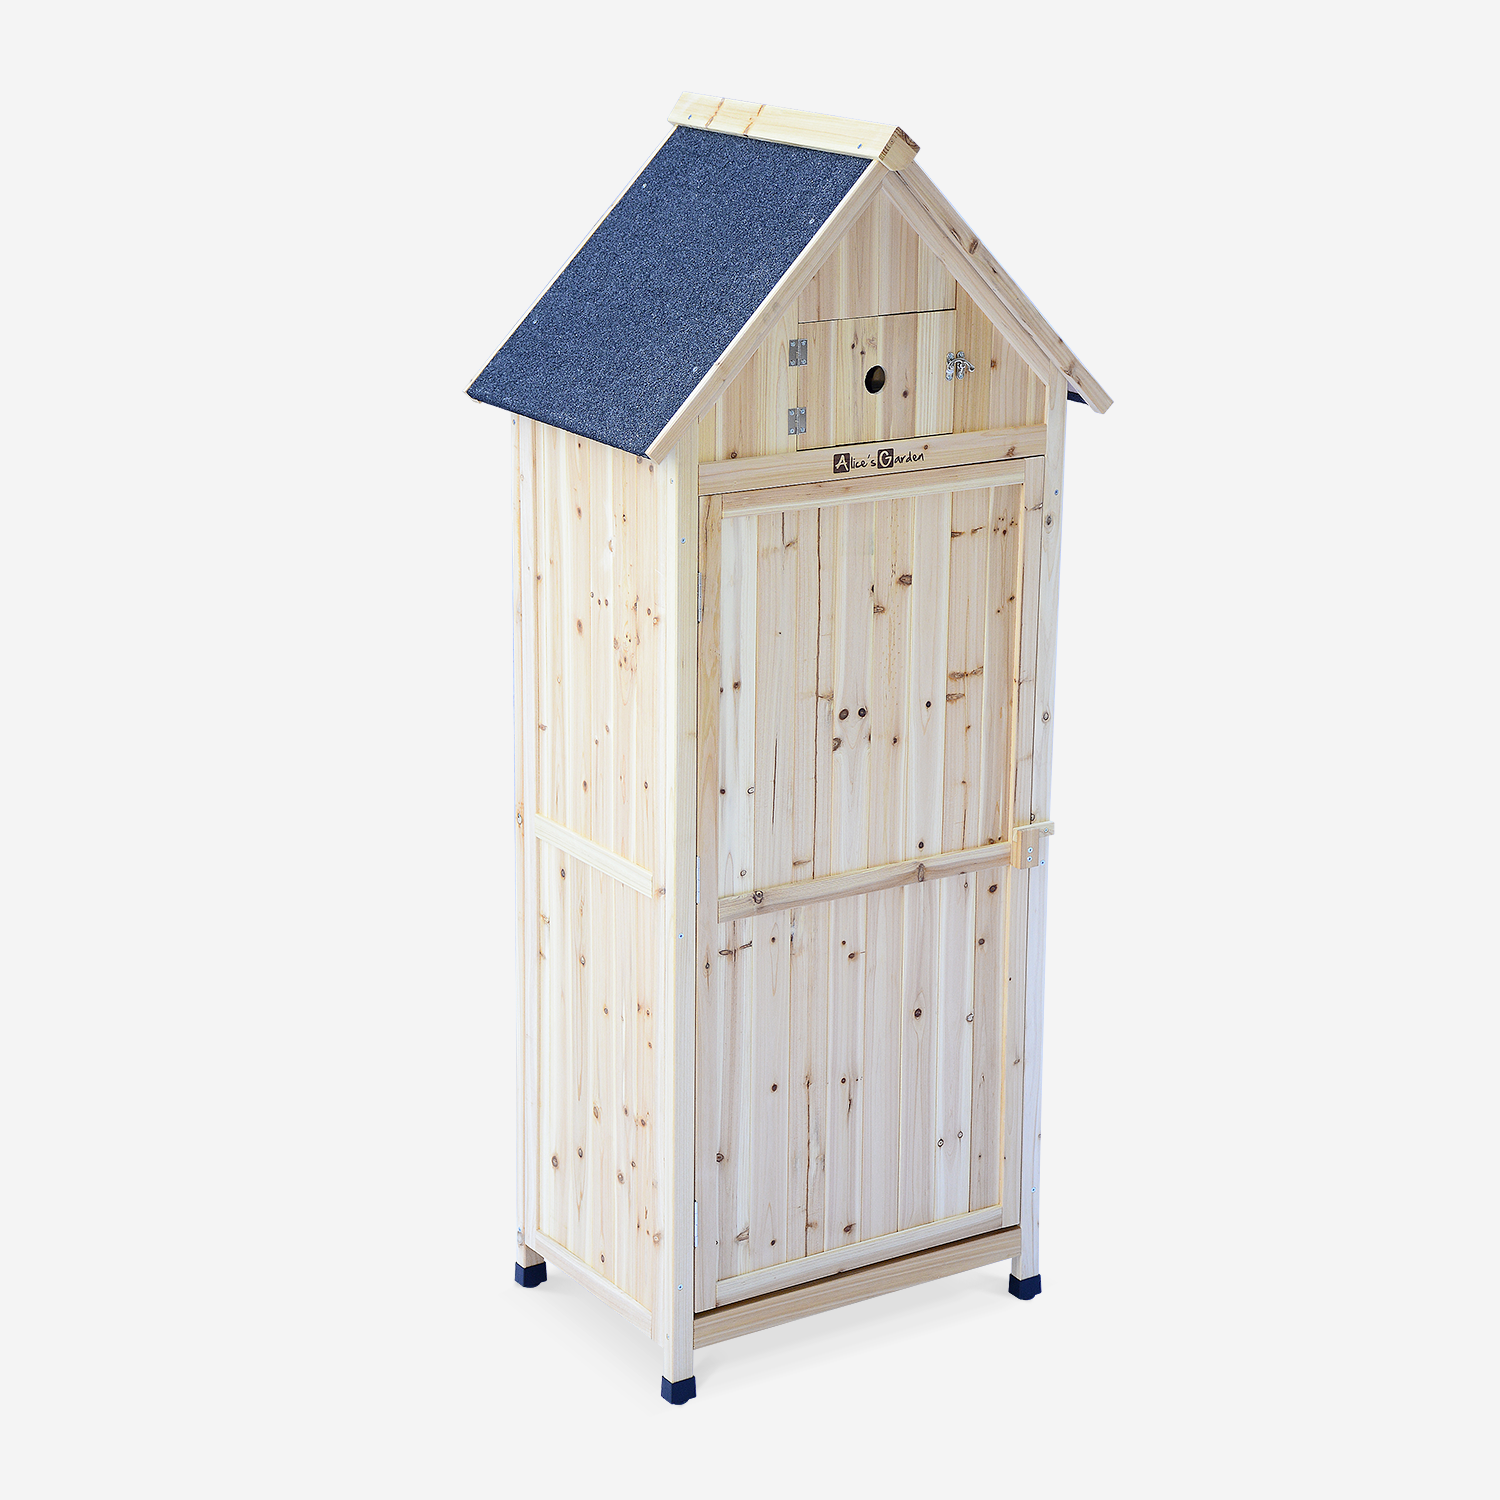 Wooden garden cabinet - 77x54.5x179 cm - Garden shed, storage cupboard, tool storage - Mimosa - Natural Photo1